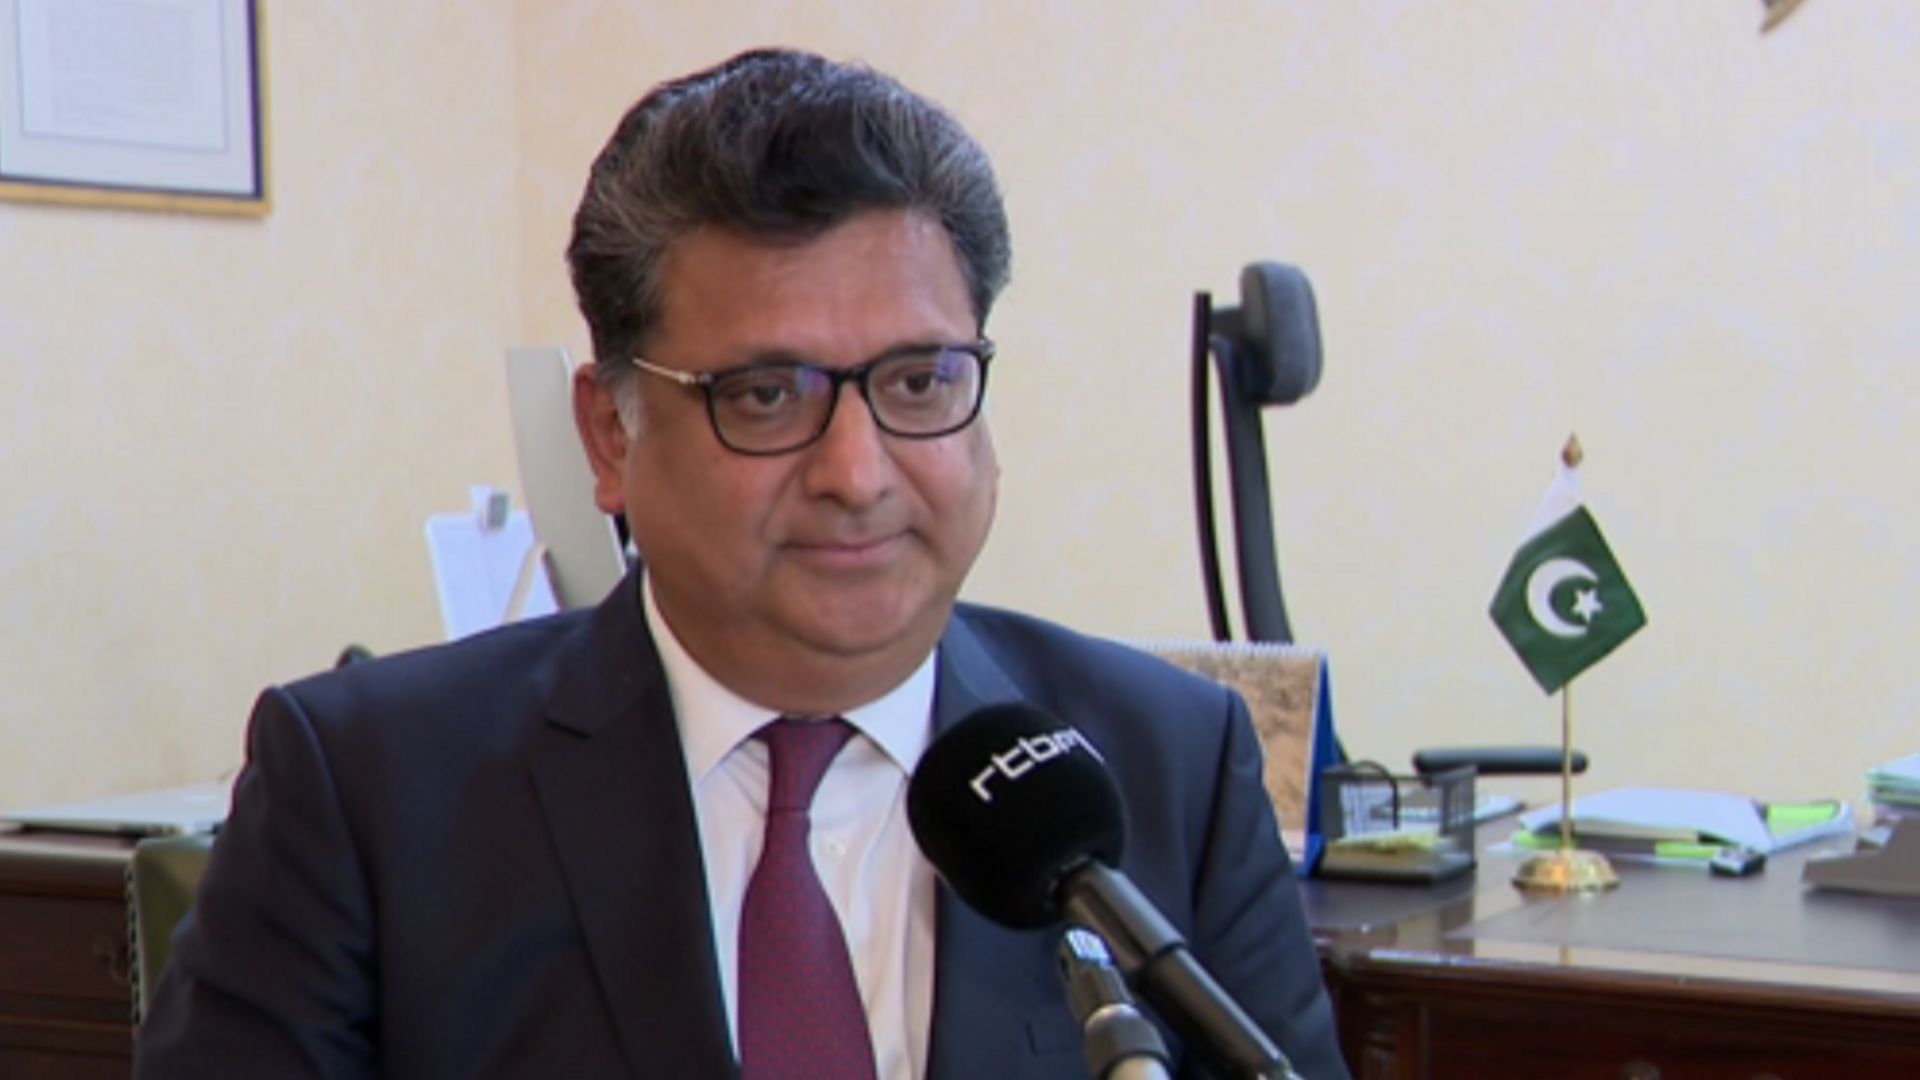 Mr Zaheer A. Janjua, ambassadeur du Pakistan auprès de l’Union européenne, de la Belgique et du Luxembourg.